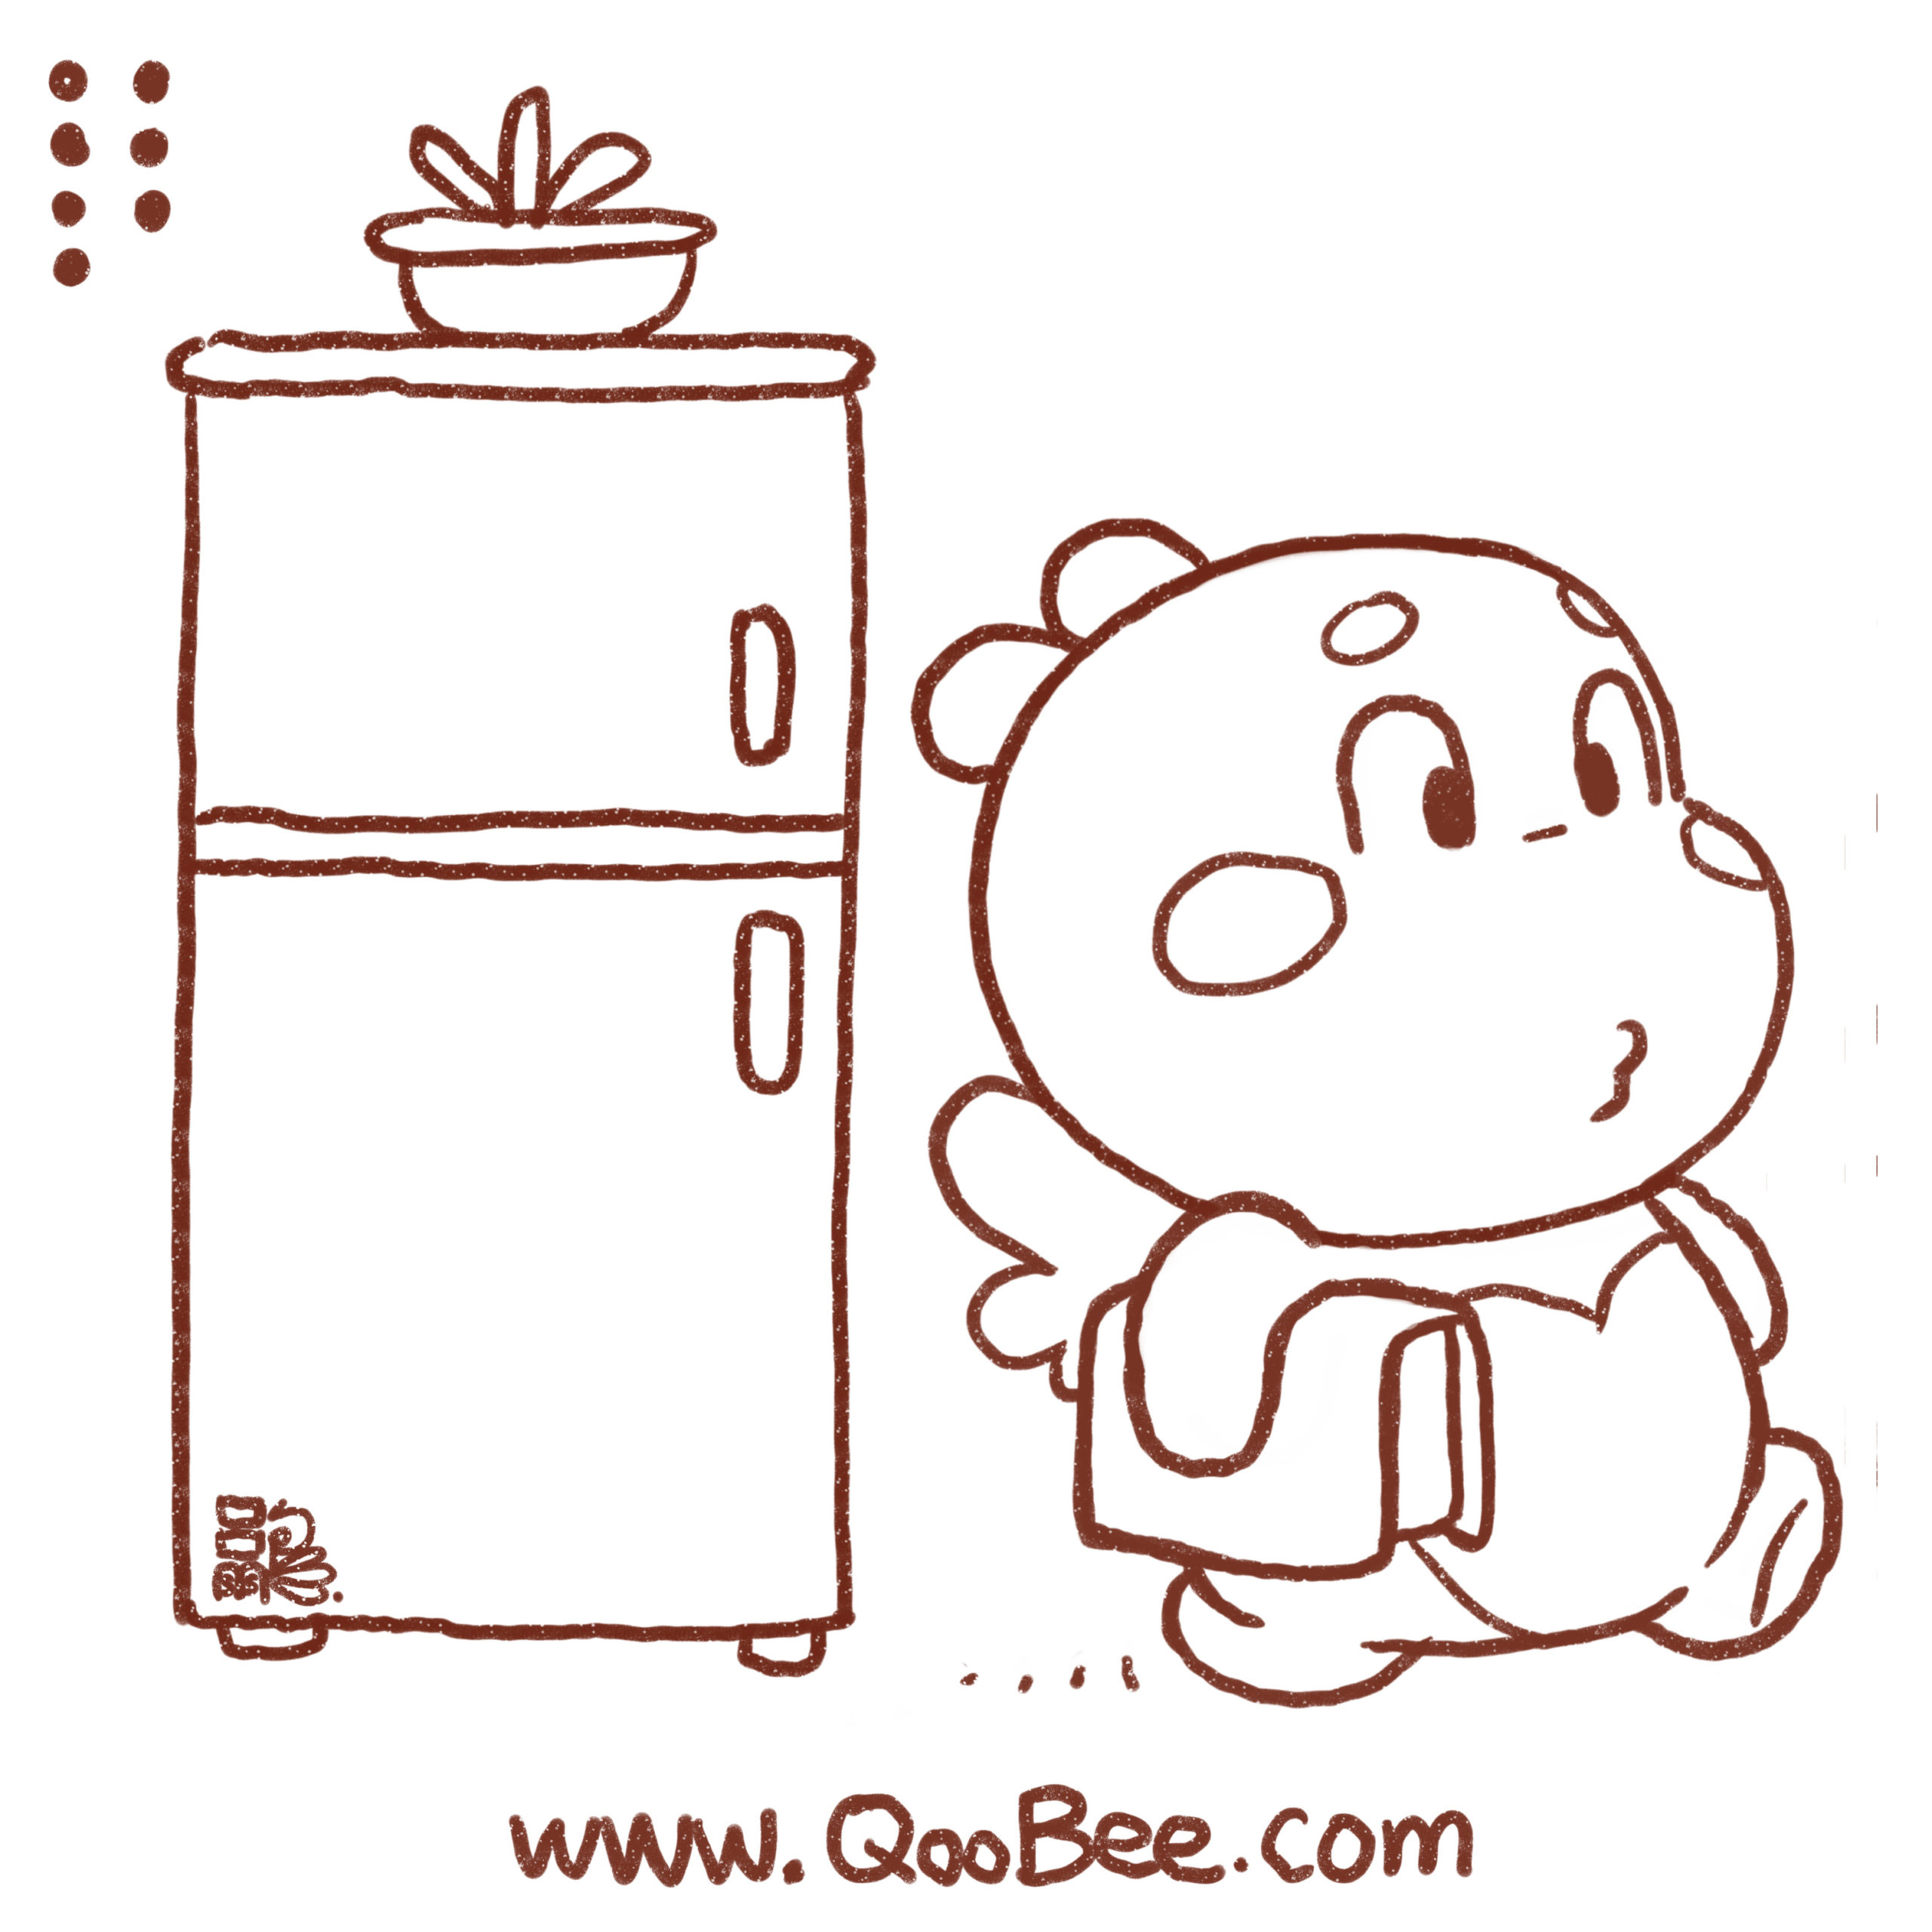 Qoobee comic 090519 7